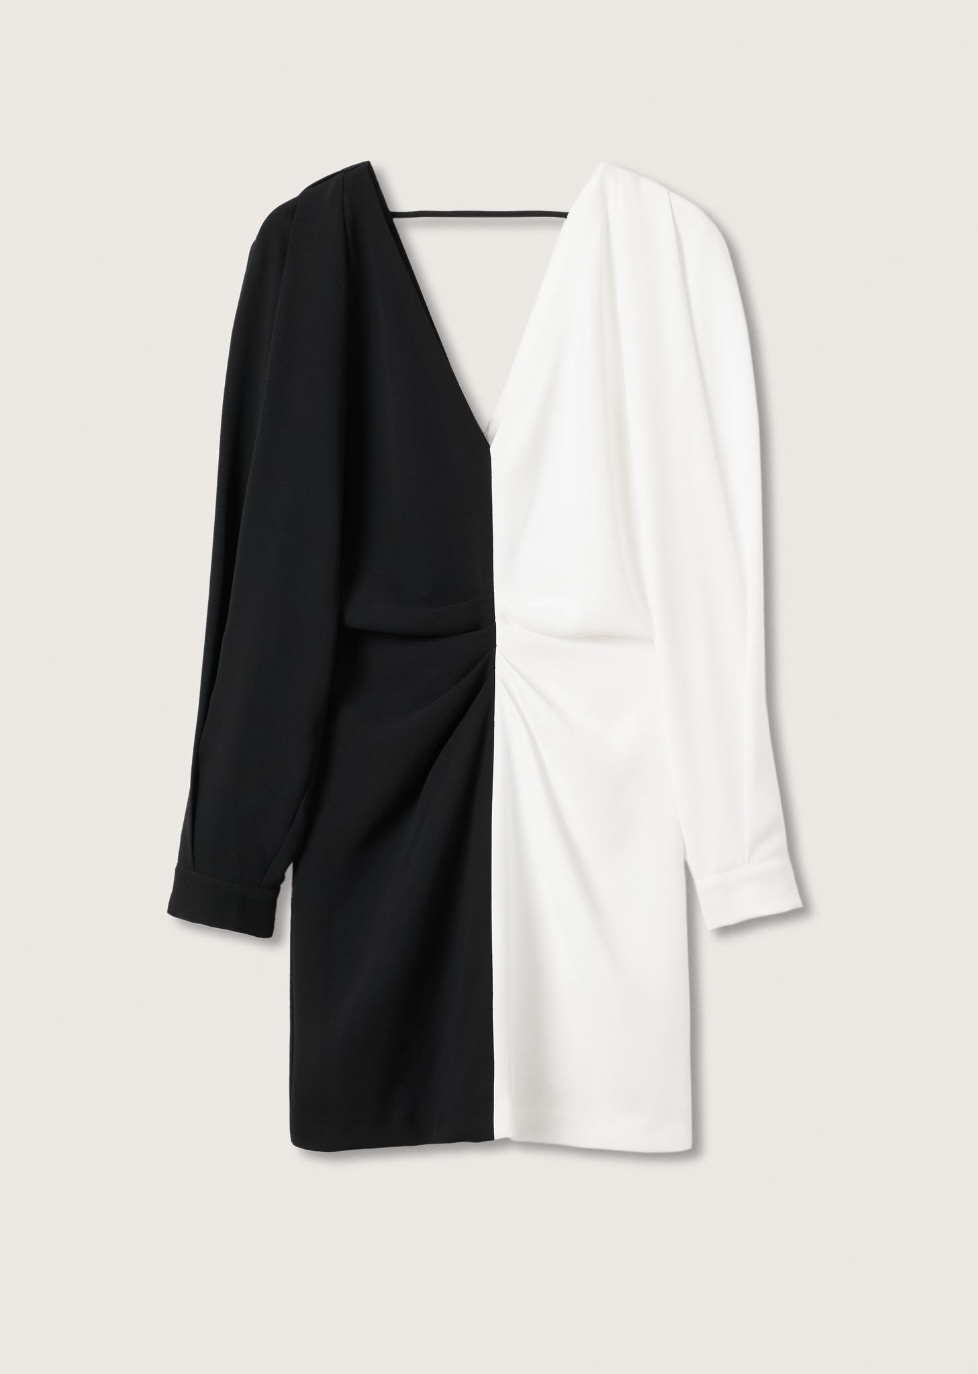 El vestido blanco y negro Mango, el binomio perfecto | Telva.com